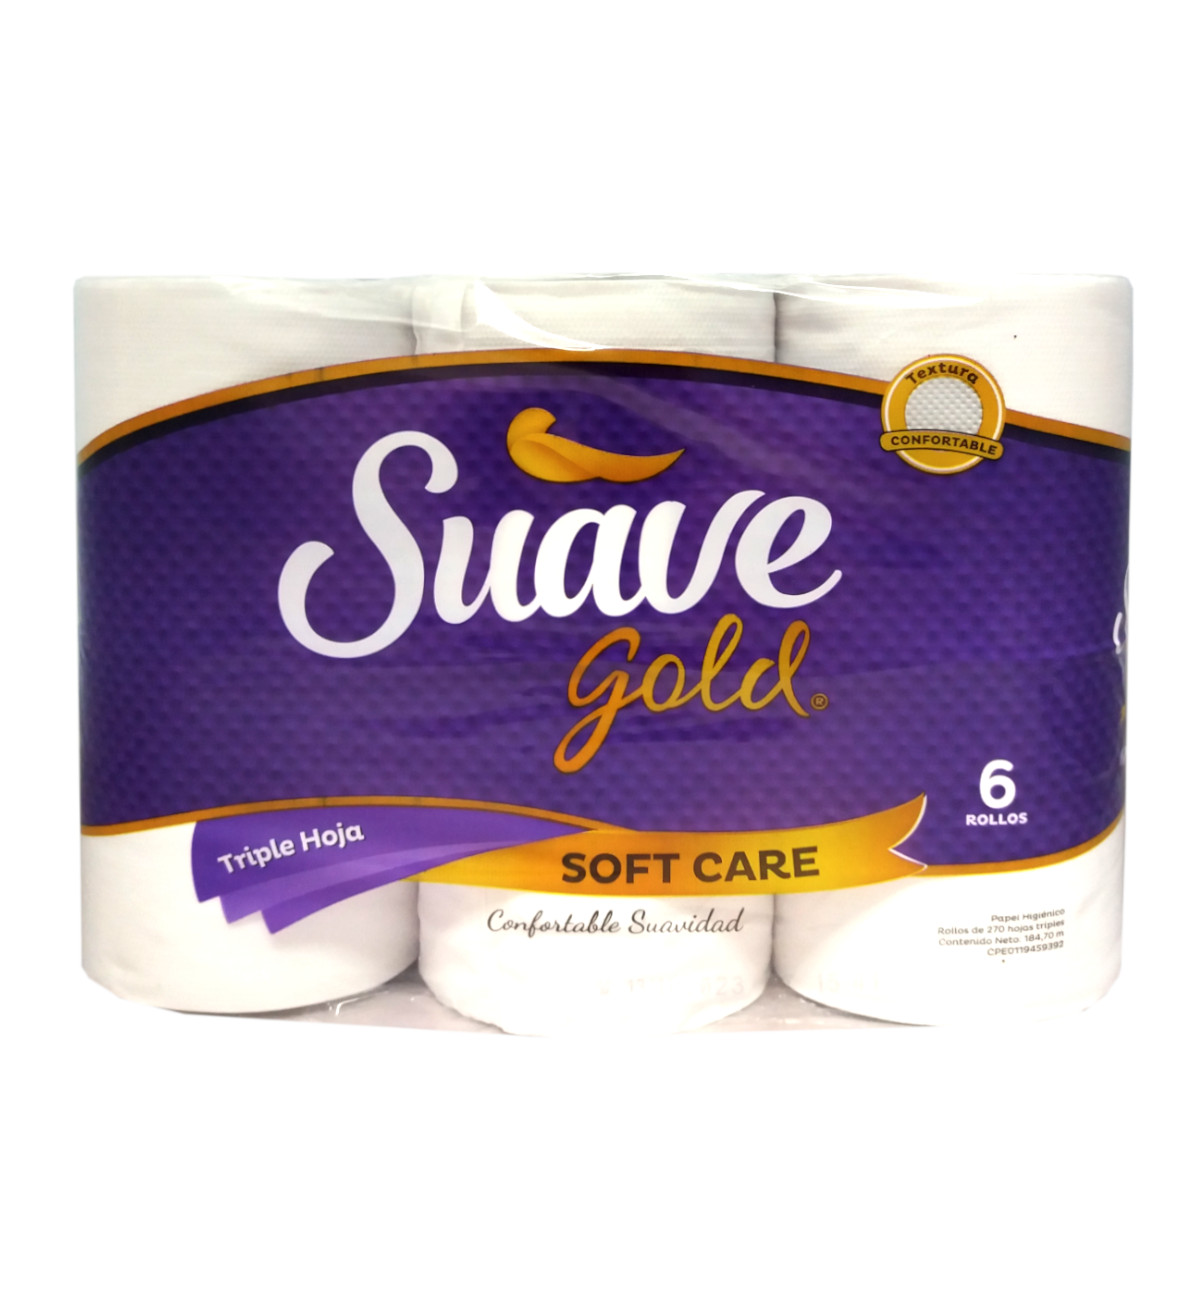 Ver Información de Papel Higinico Suave Gold Soft Care Premium 4 x 12 270 Hojas en Verines.com